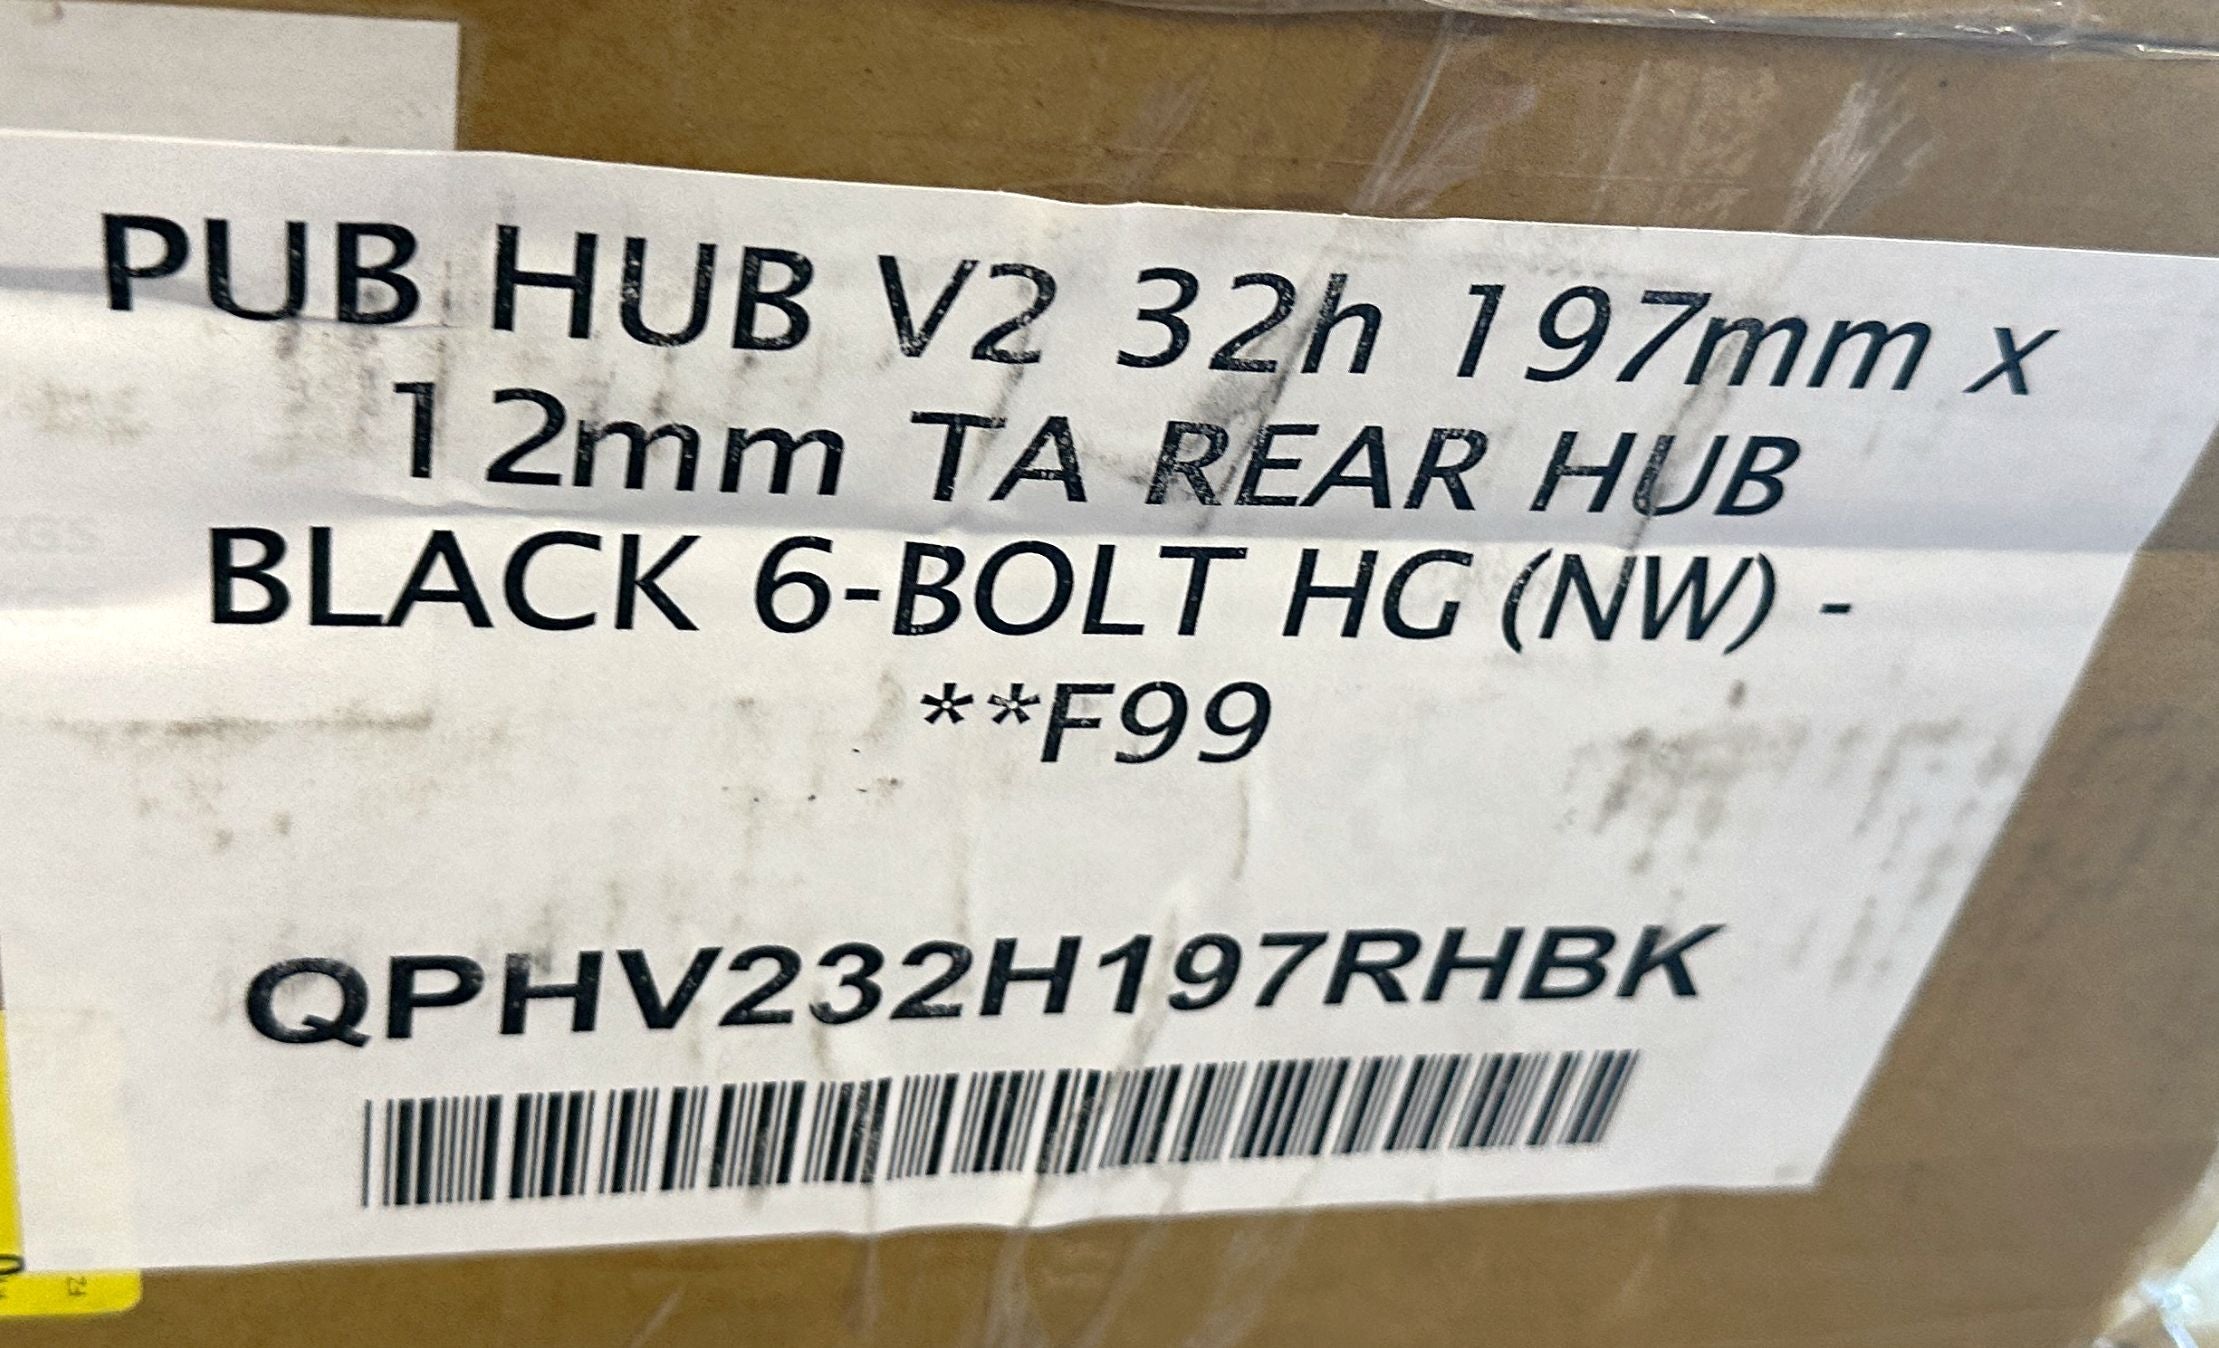 PUB HUB V2 32h 197mm x 12mm TA REAR HUB BLACK 6-BOLT HG 11 spd New